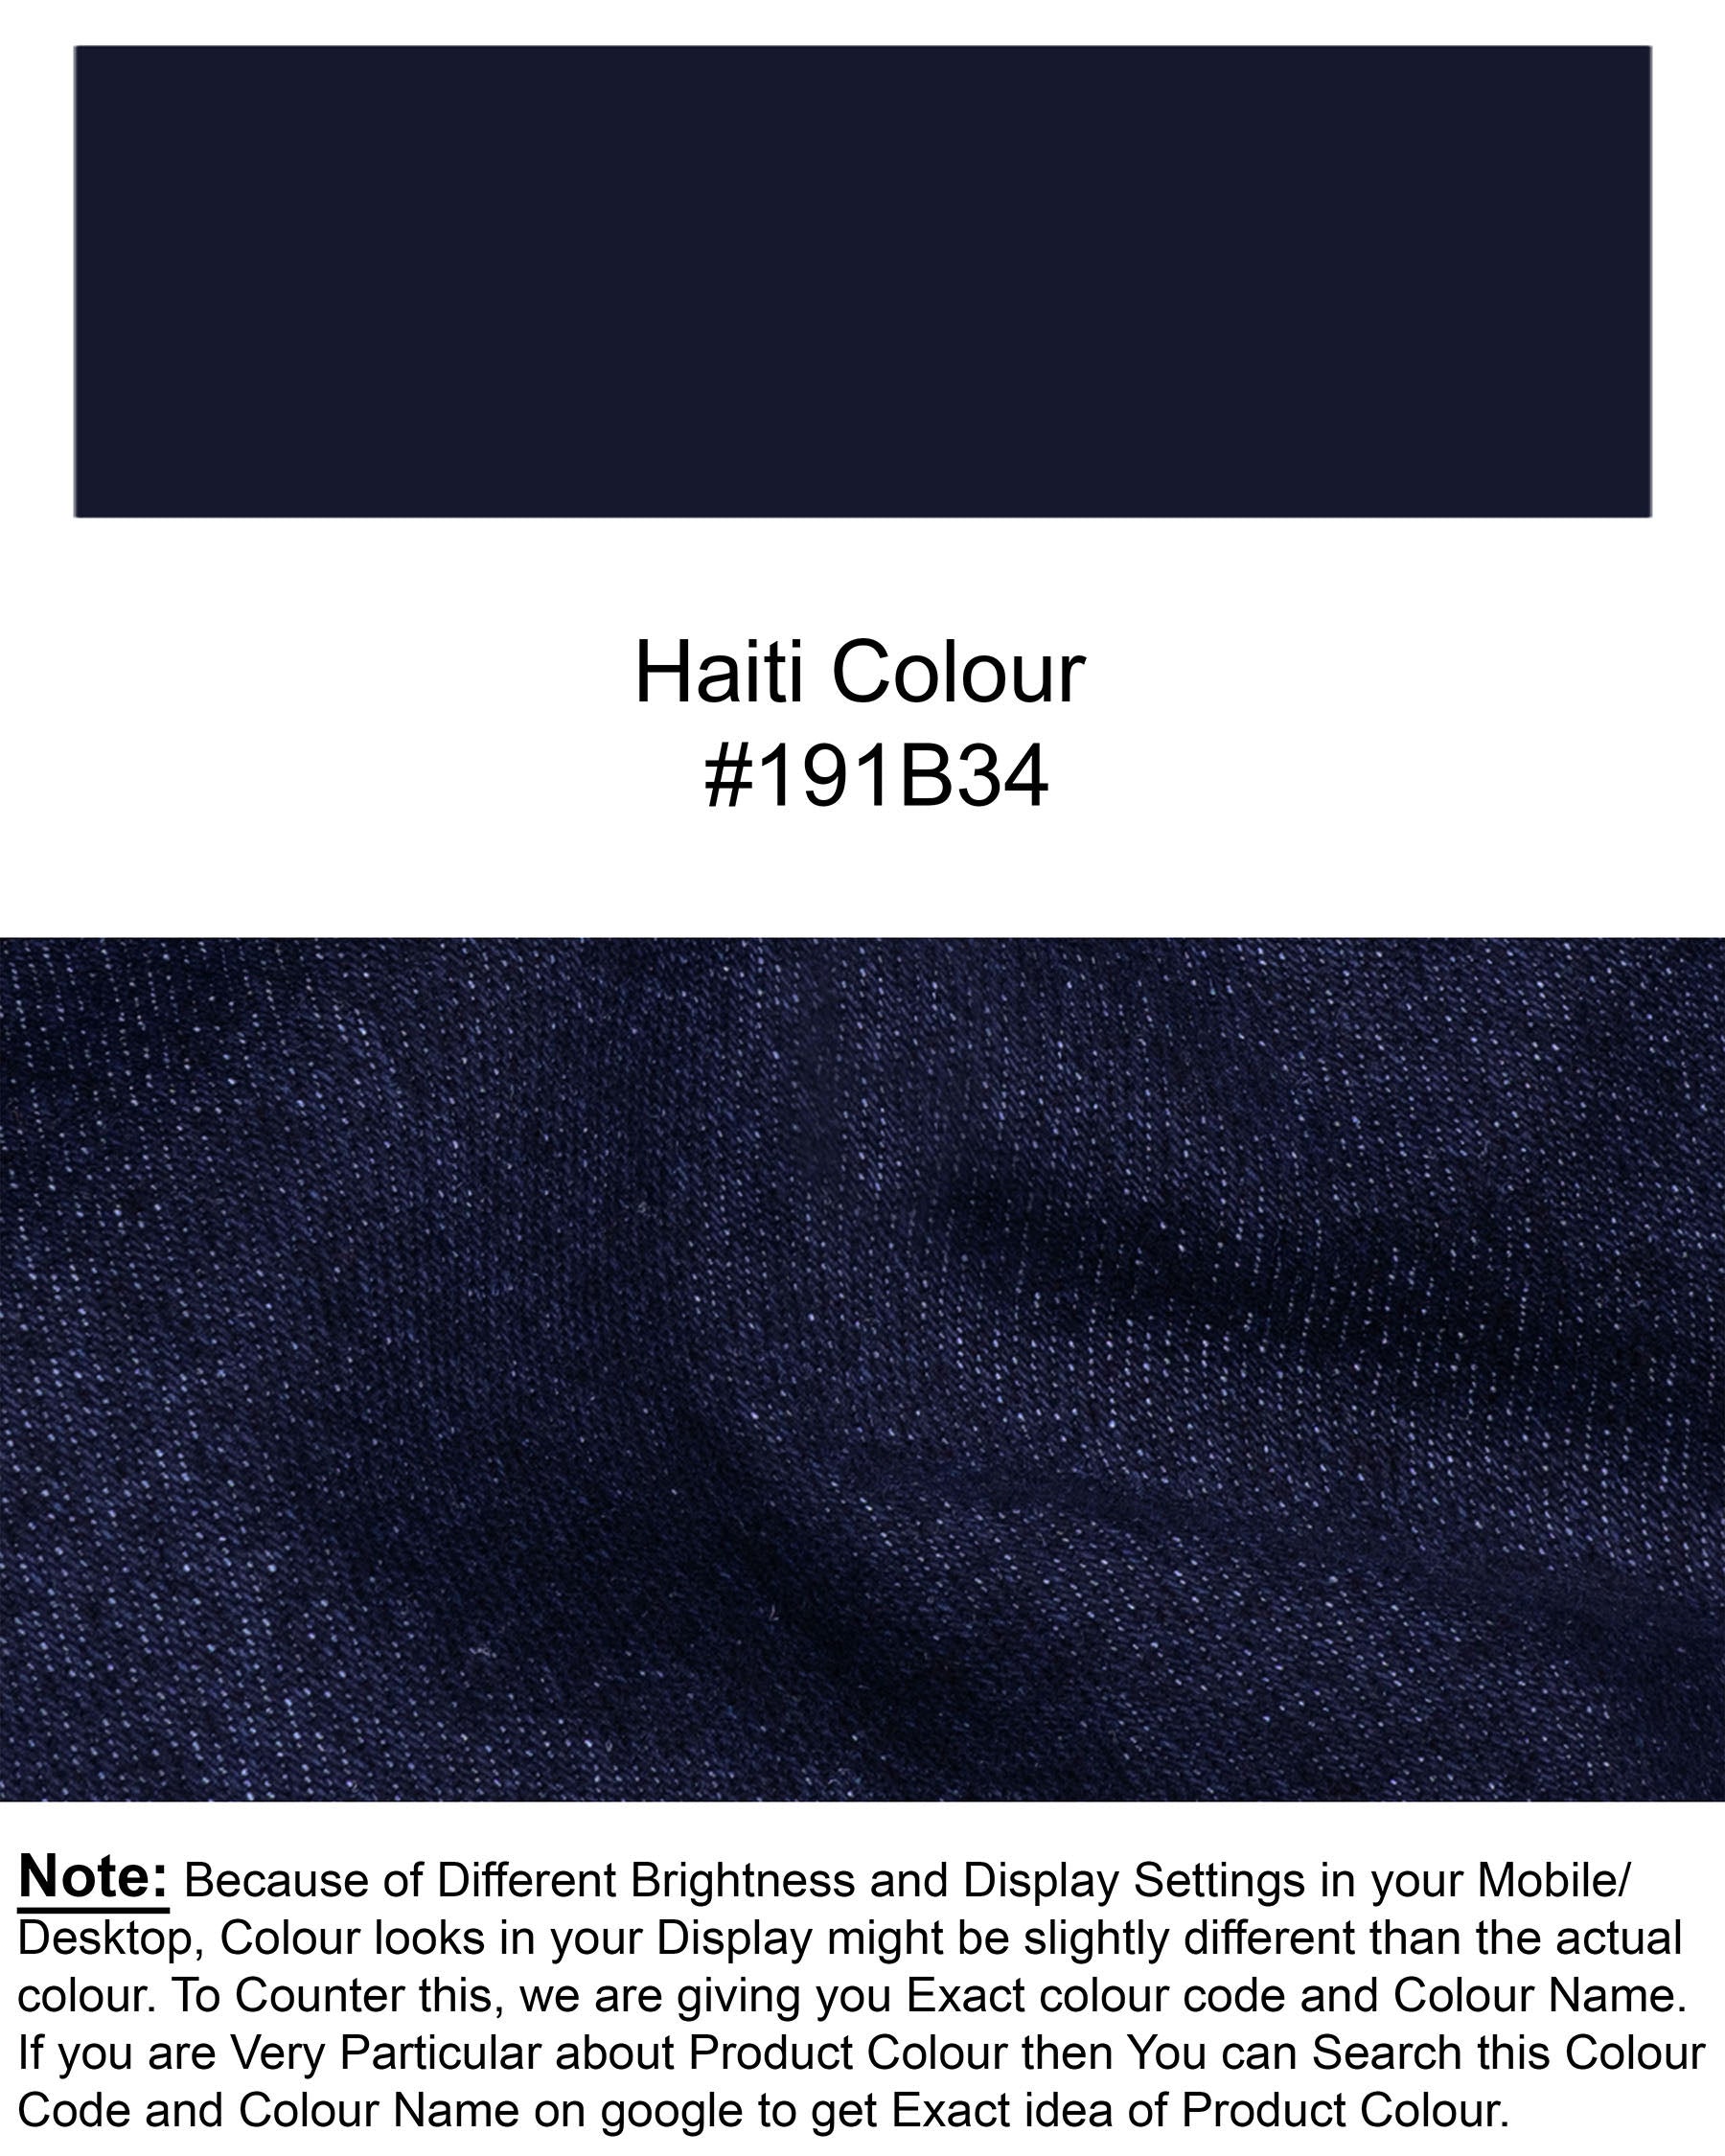 Haiti Blue Clean Look Stretchable Denim J117-32, J117-34, J117-36, J117-38, J117-40